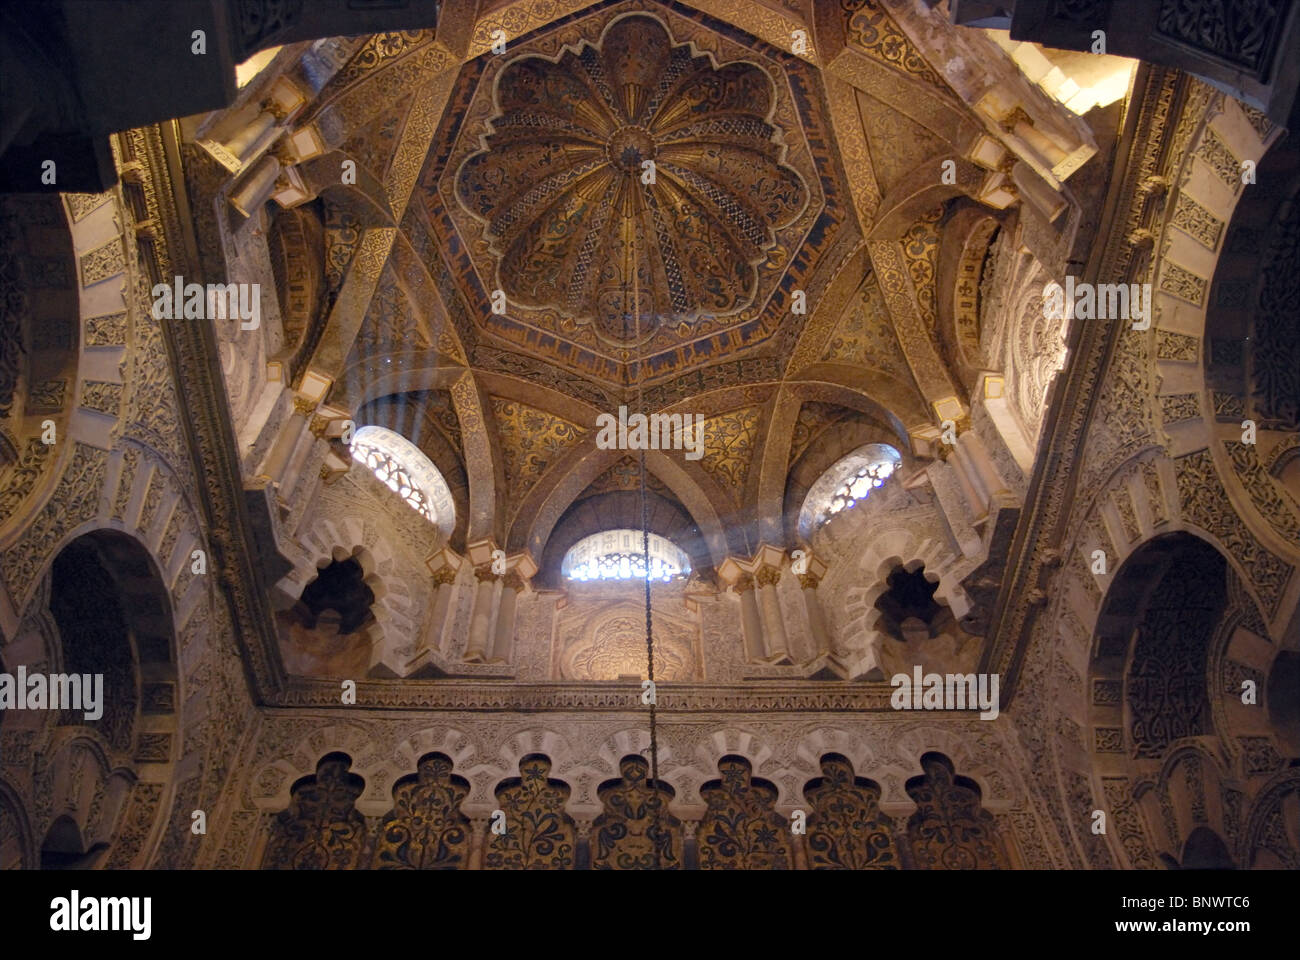 Plafond du mihrab à l'intérieur de la Mezquita (mosquée)/Cathédrale, Córdoba, Cordoue, Andalousie, province de l'Espagne, l'Europe de l'Ouest. Banque D'Images